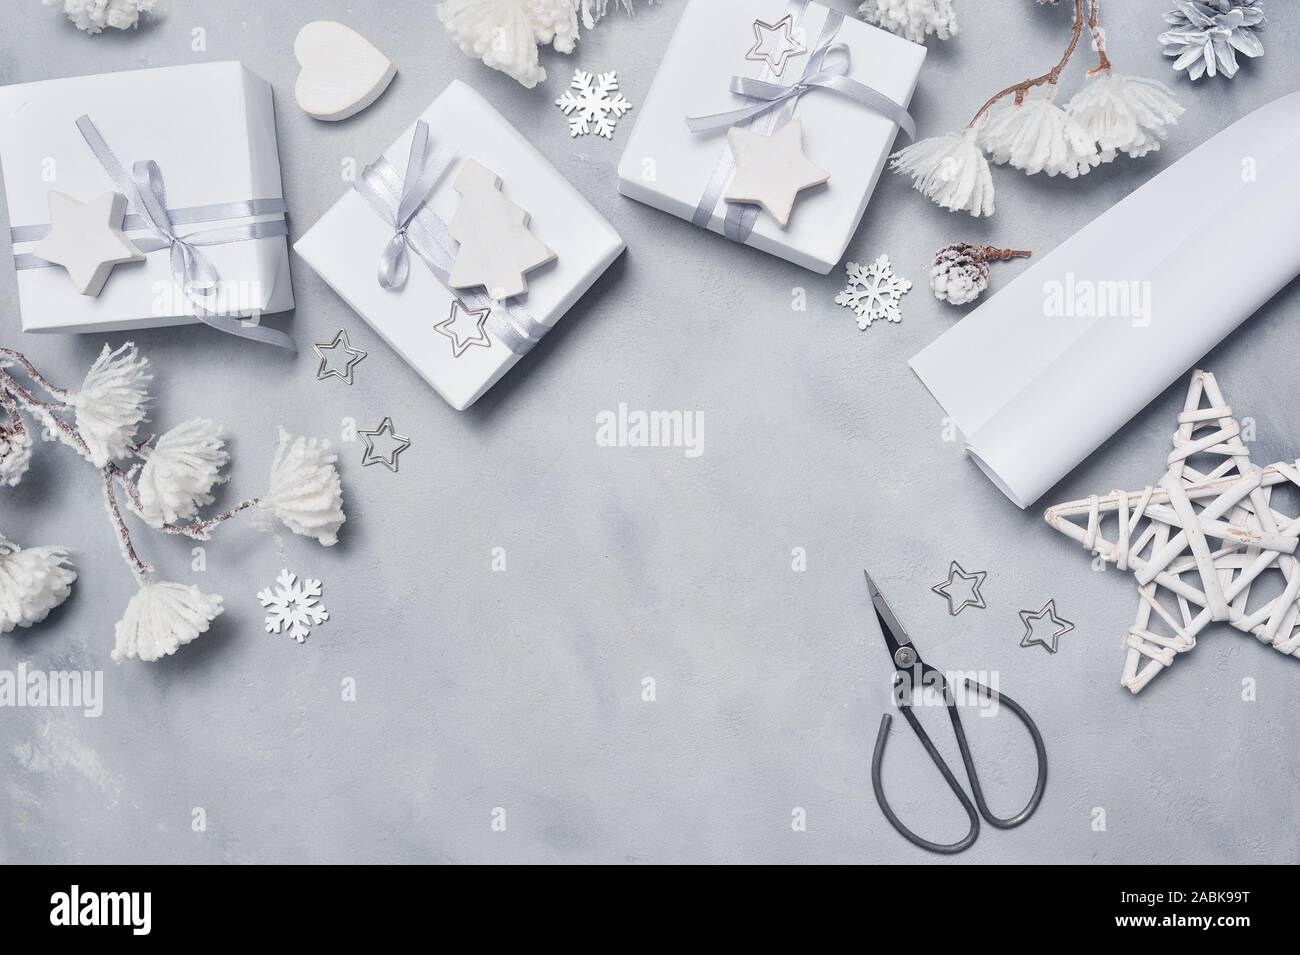 Grenze Design eine weihnachtliche Grußkarte mit Weihnachten Geschenkboxen, Schere, Kegel, Stern, Schneeflocken mit Platz für Ihren Text. Dekoration auf einem weißen Holz- Stockfoto